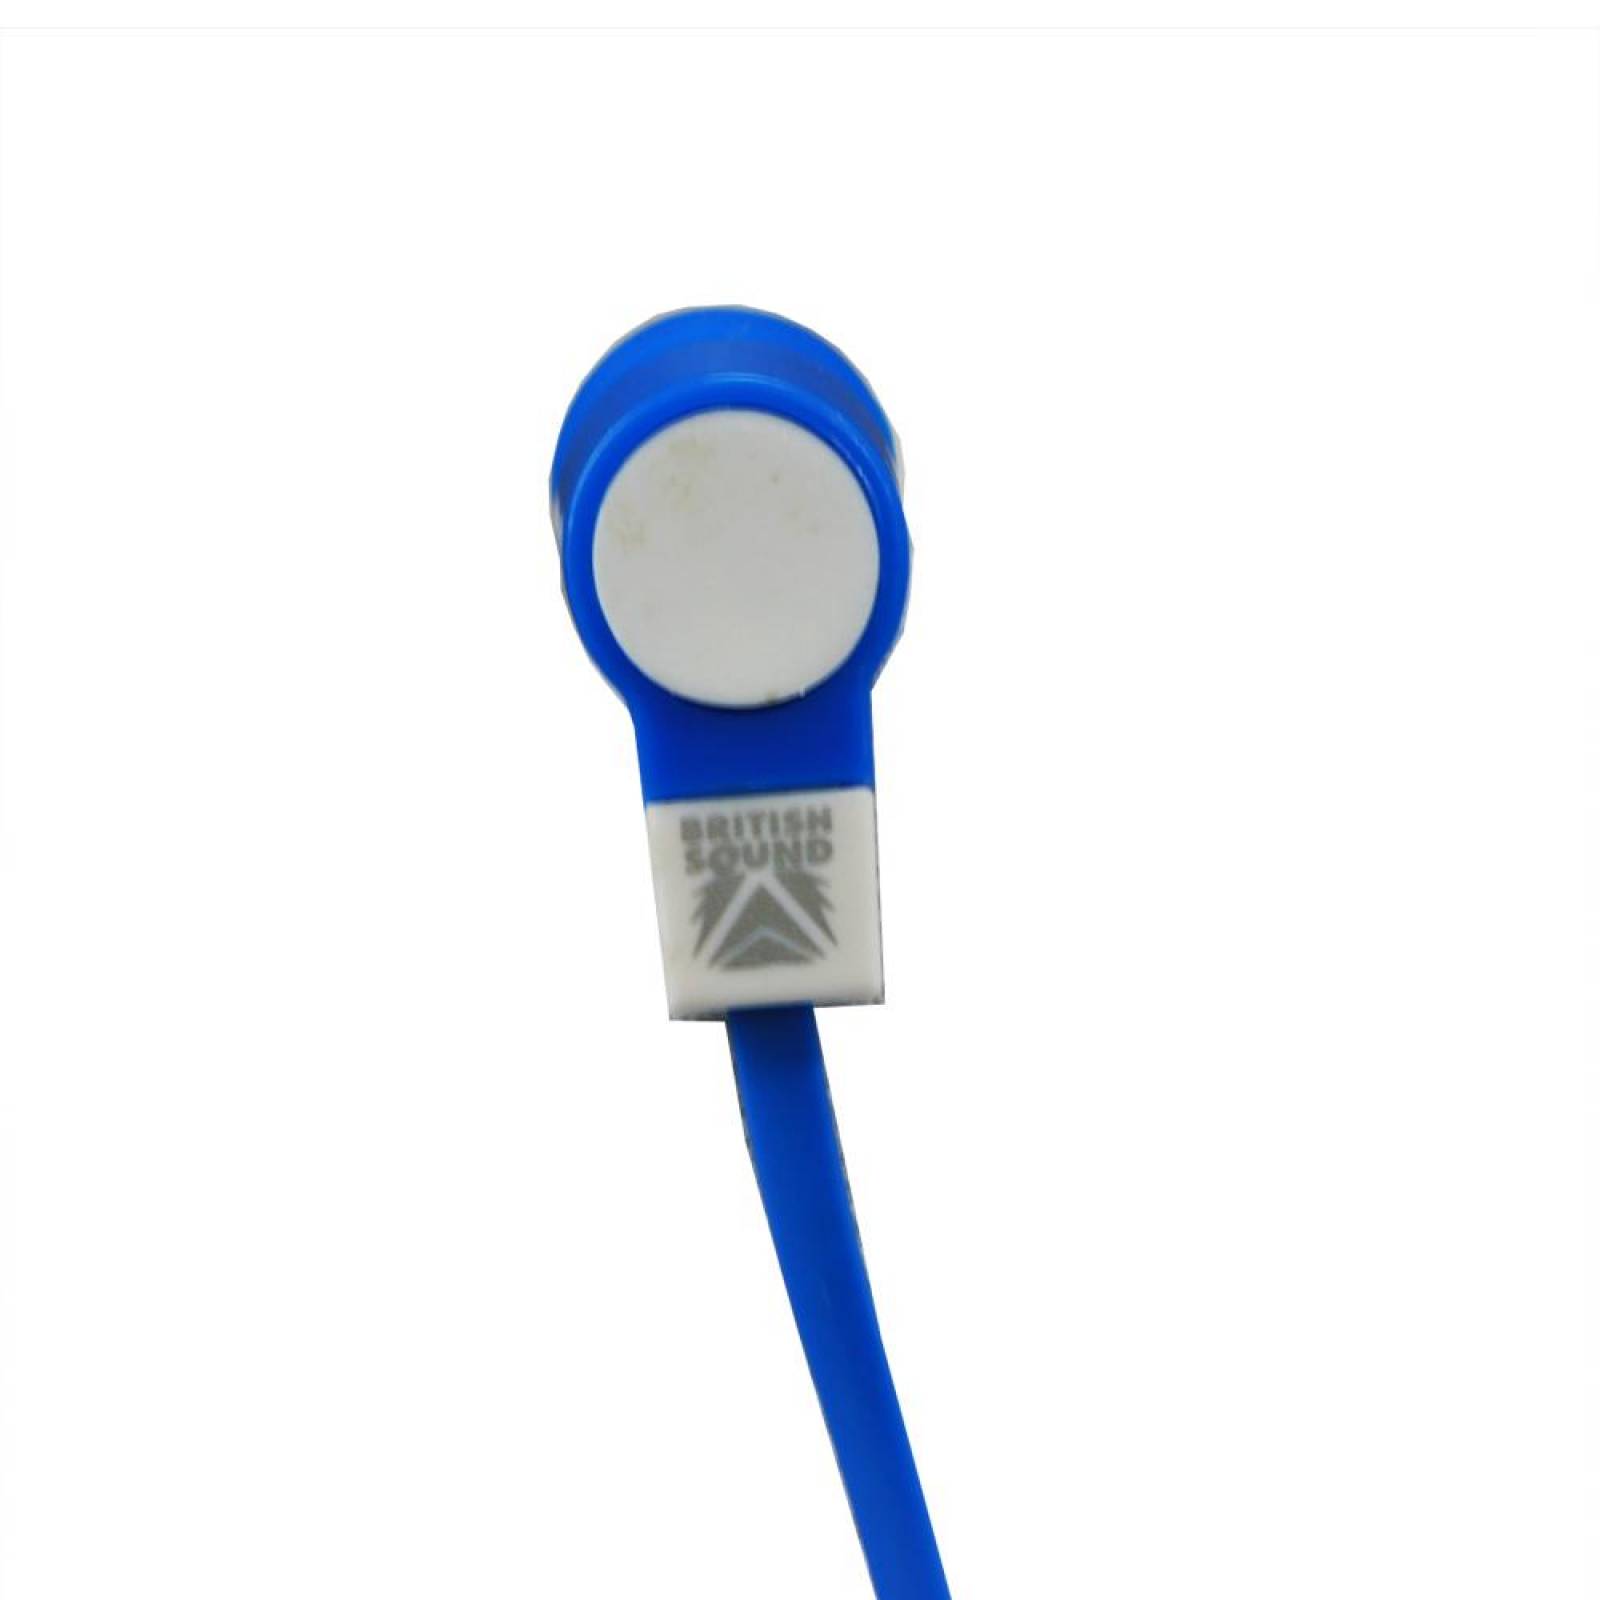 Audifonos sonido estéreo alámbricos 120 cm BS-EPWR-01(CL) Azul